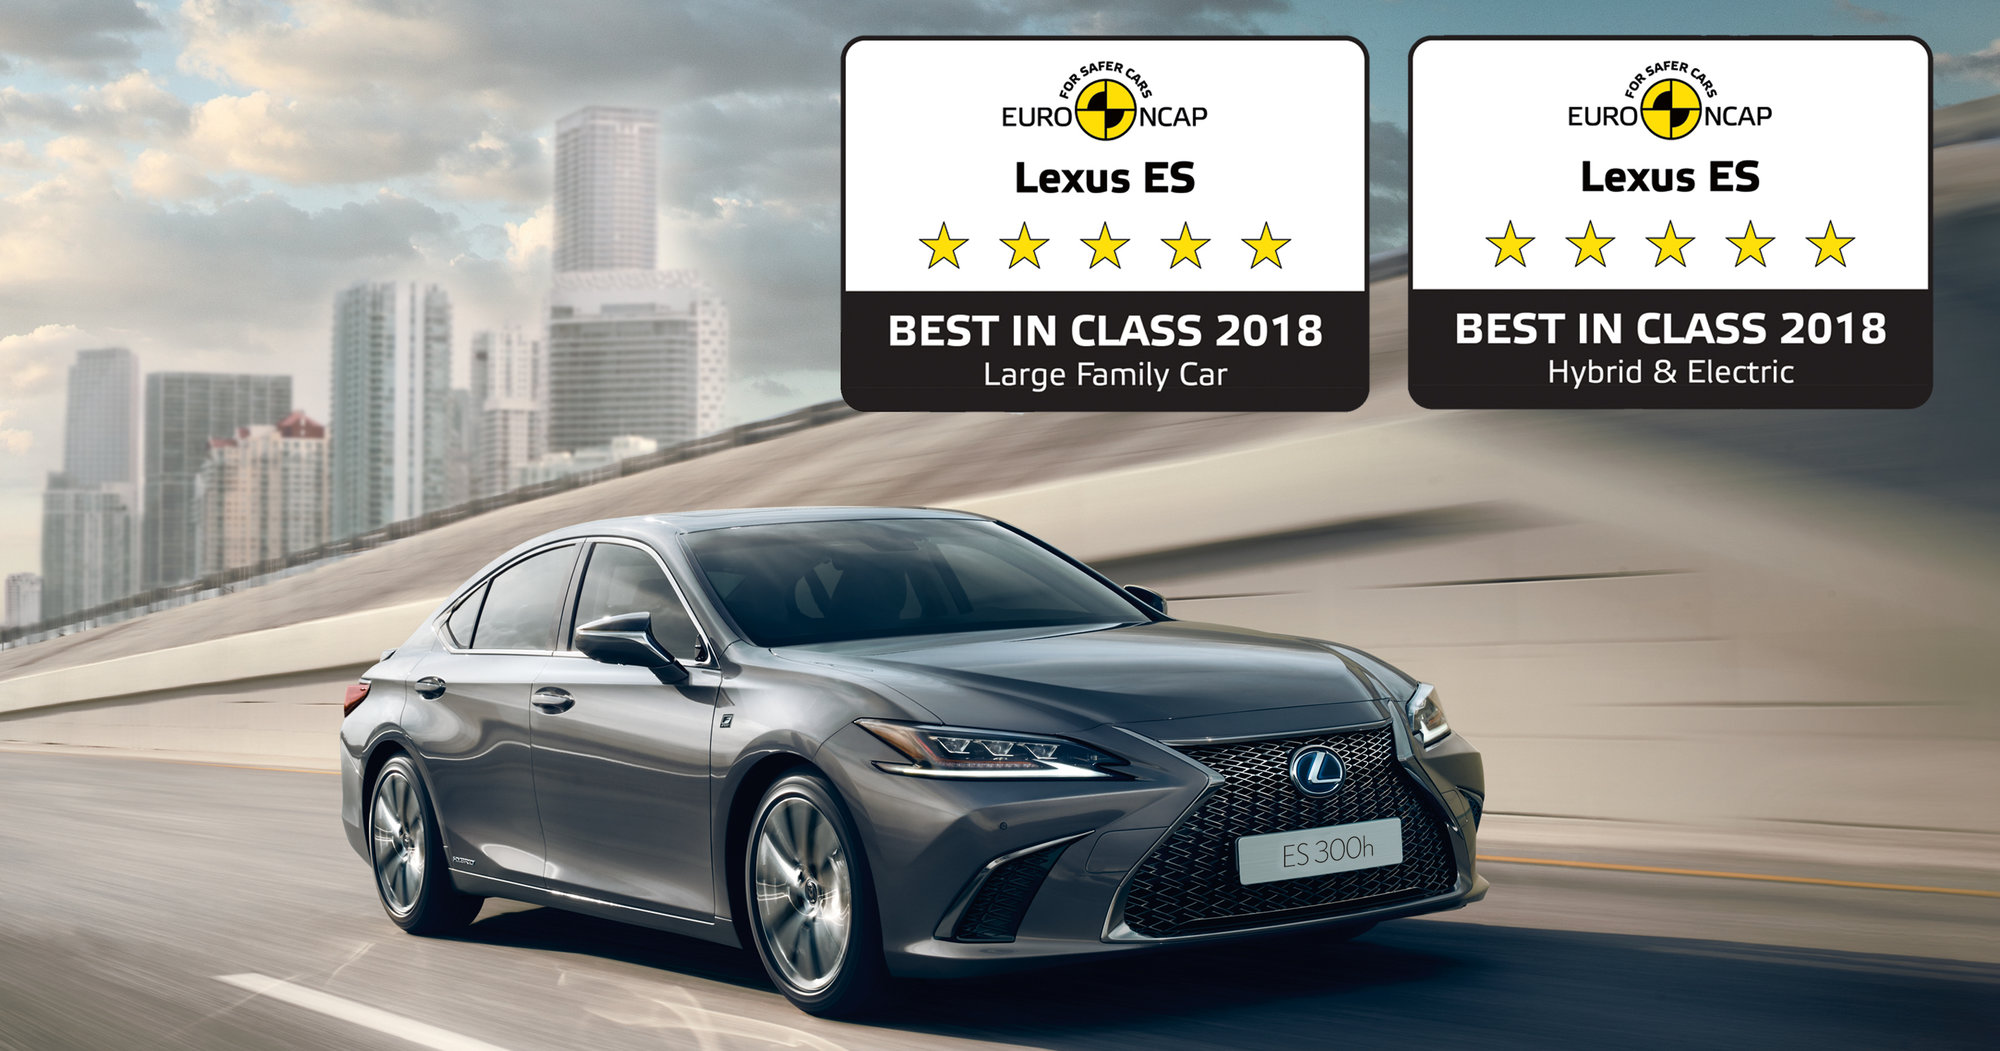 Galería: El nuevo Lexus ES 300h híbrido es nombrado vehículo más seguro de Europa en dos categorías: “Vehículo Familiar Grande” y “Vehículo Híbrido y Eléctrico”